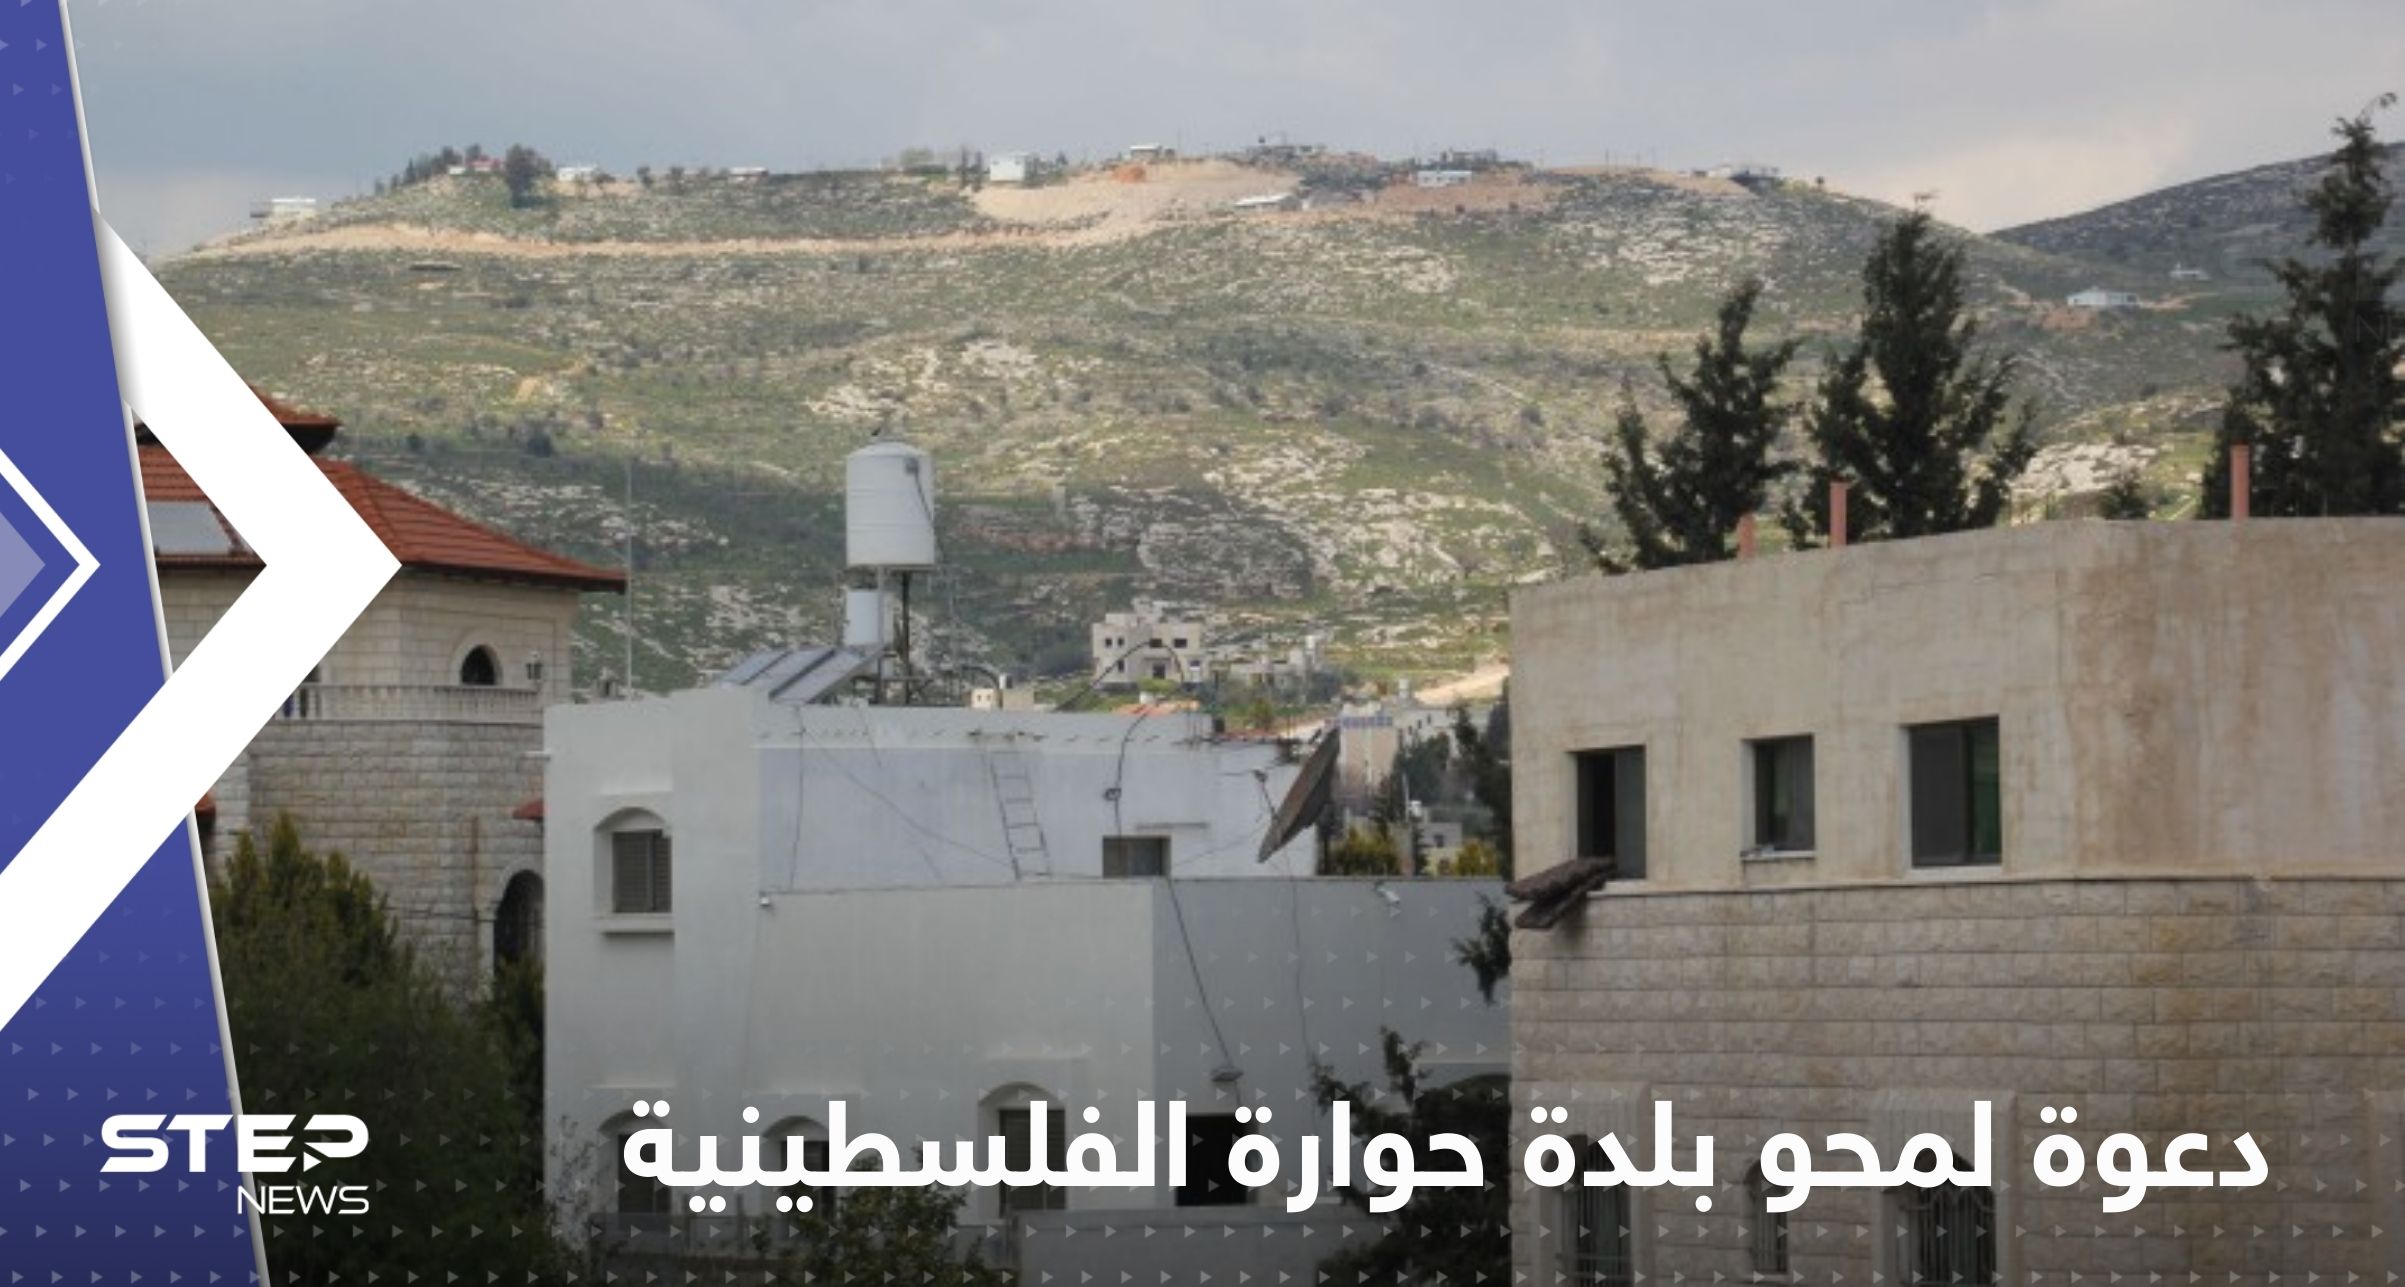 عضو في الكنيست الإسرائيلي يدعو لمحو بلدة حوارة الفلسطينية